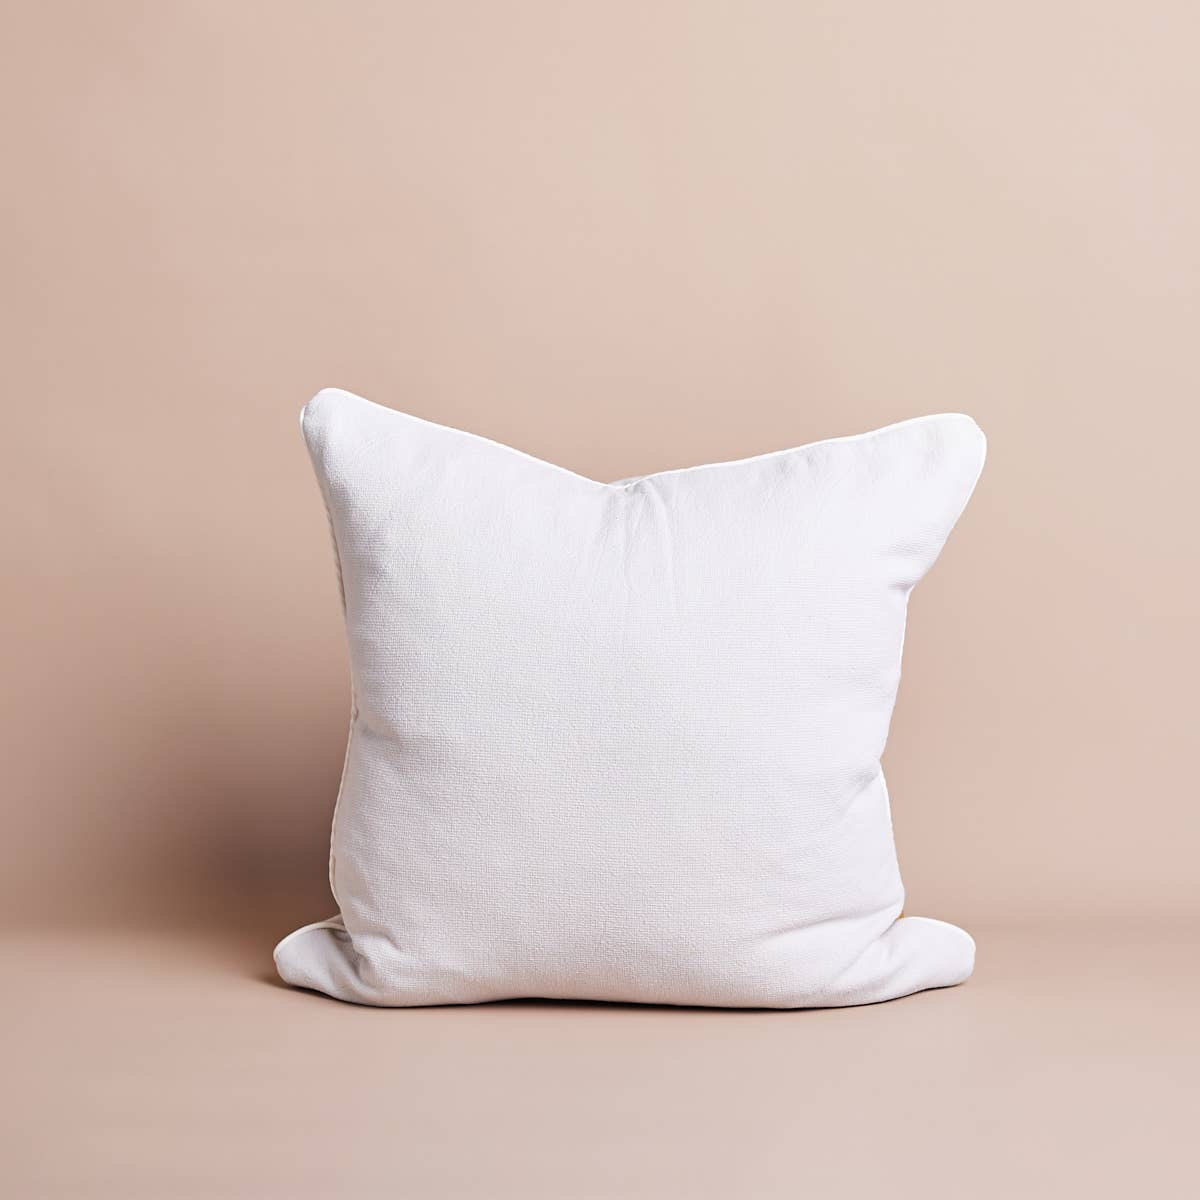 Terry Cotton Pillows